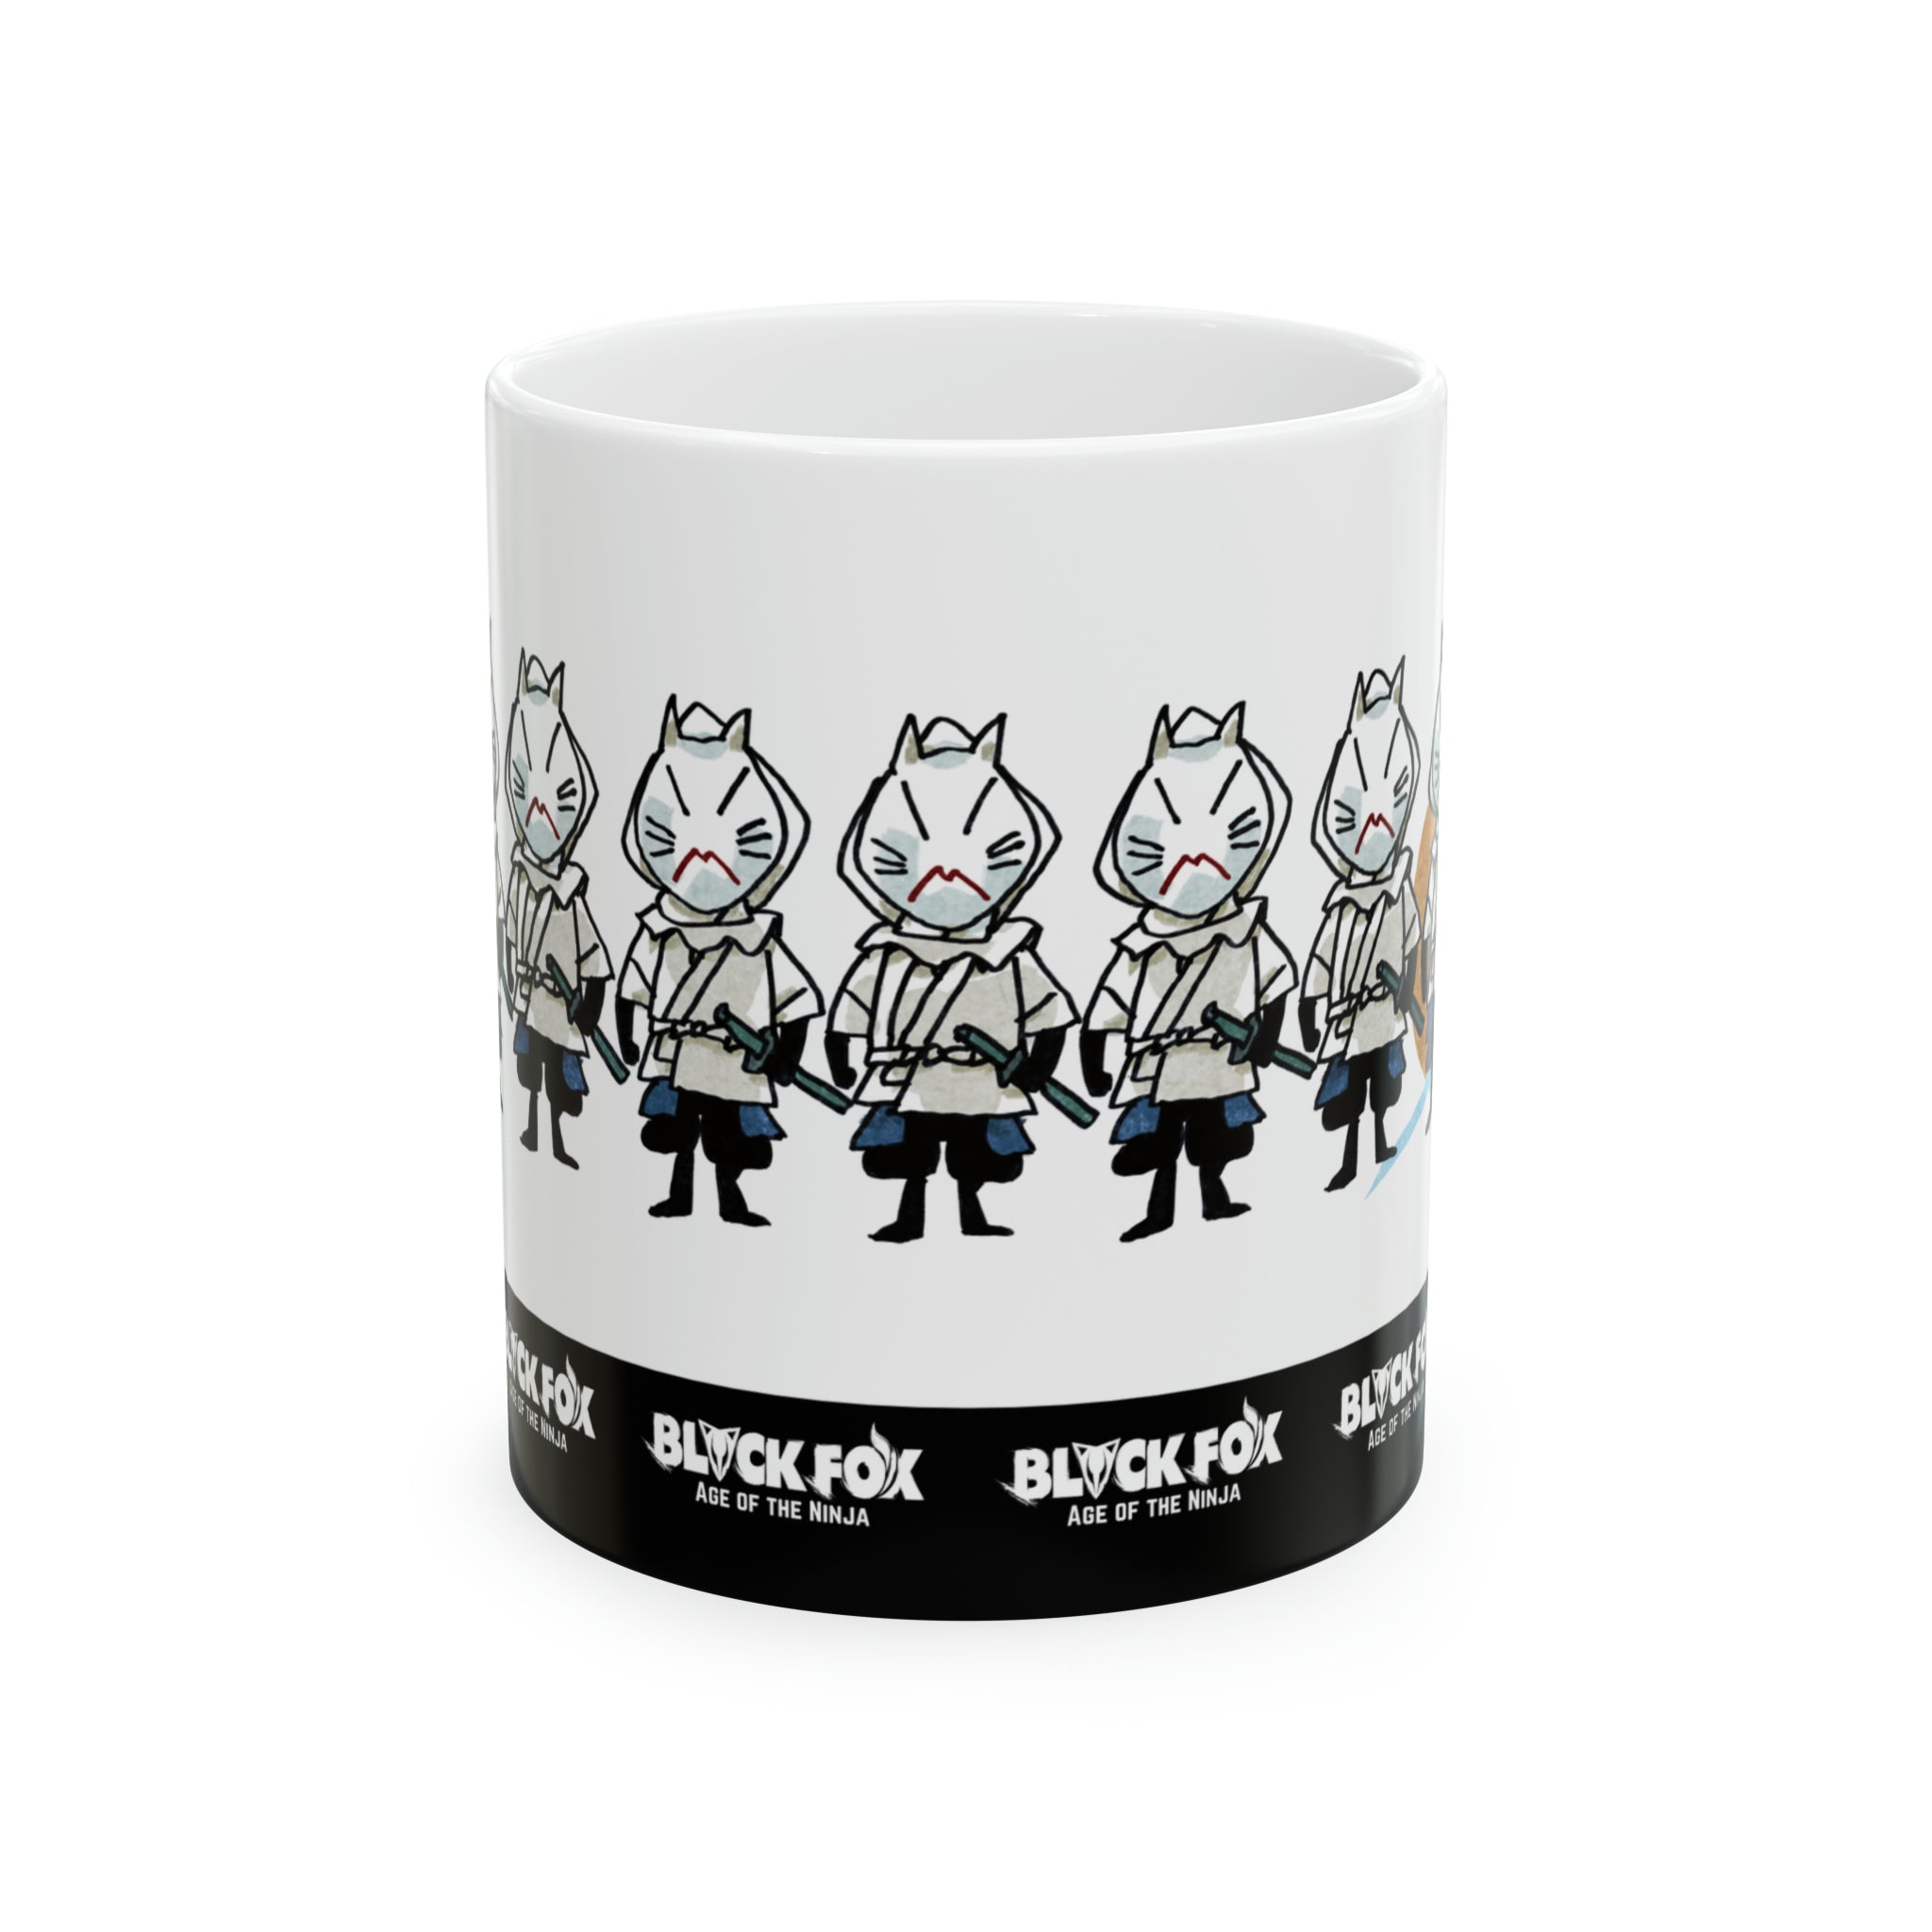 BLACKFOX "WHITE FOXES" Coffee Mug